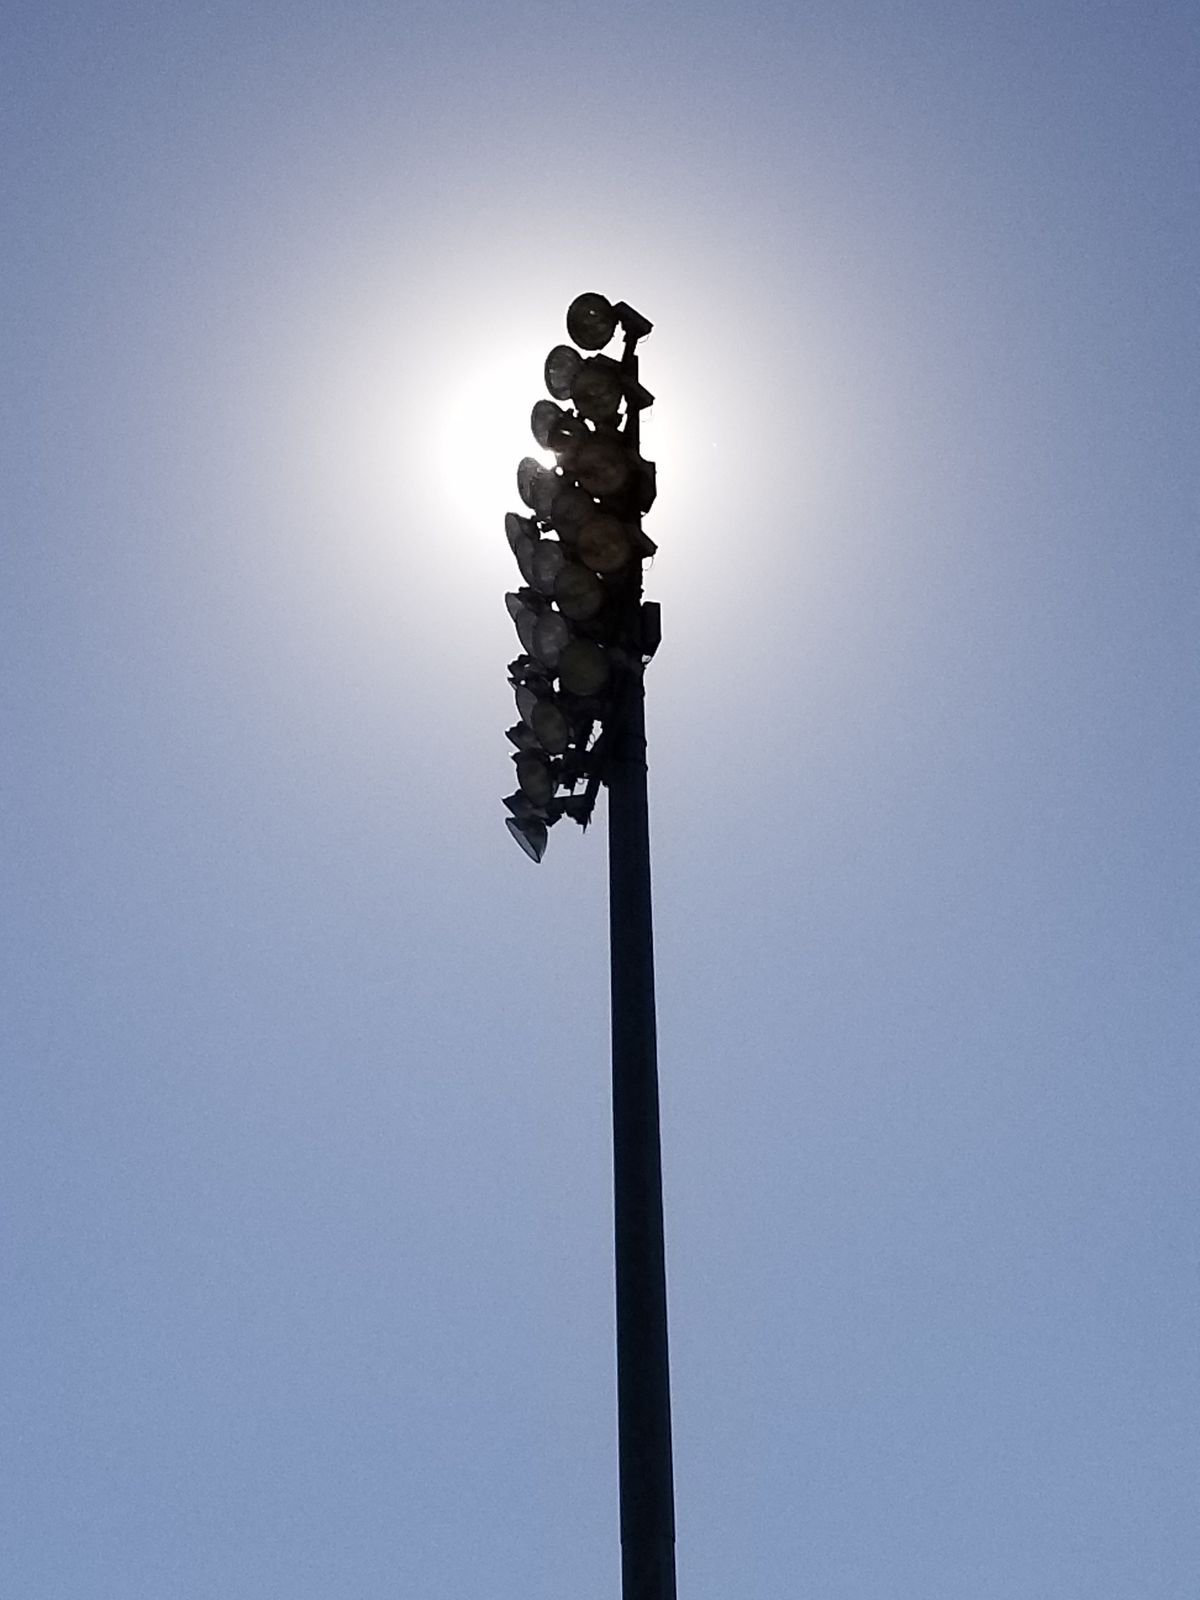 Stadium lights in the sun